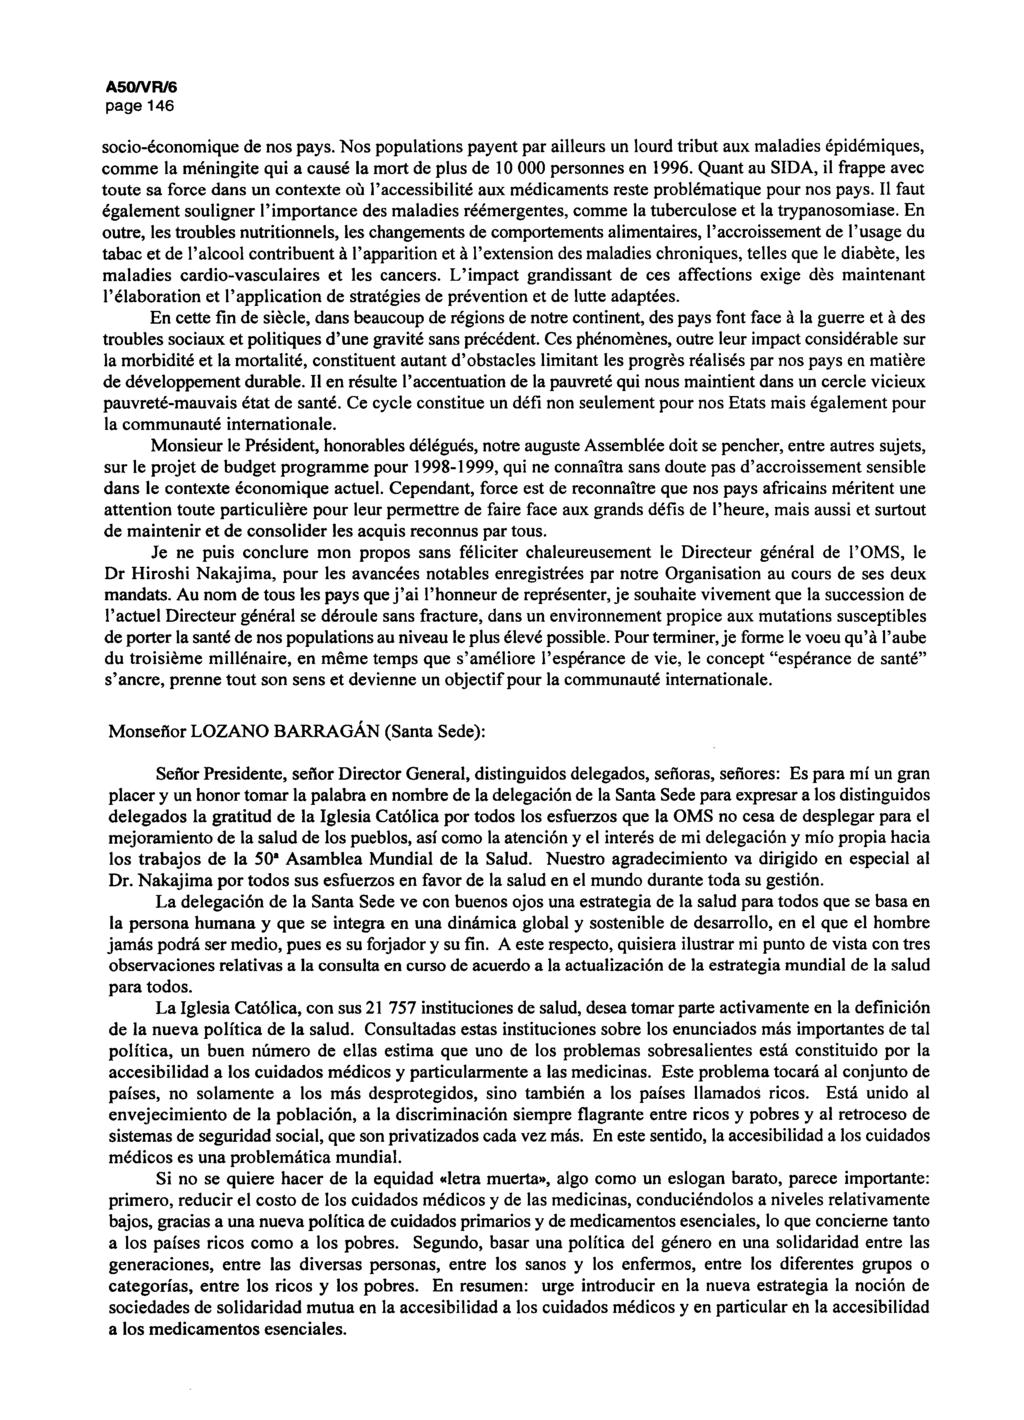 A50/VR/6 page 146 socio-économique de nos pays.